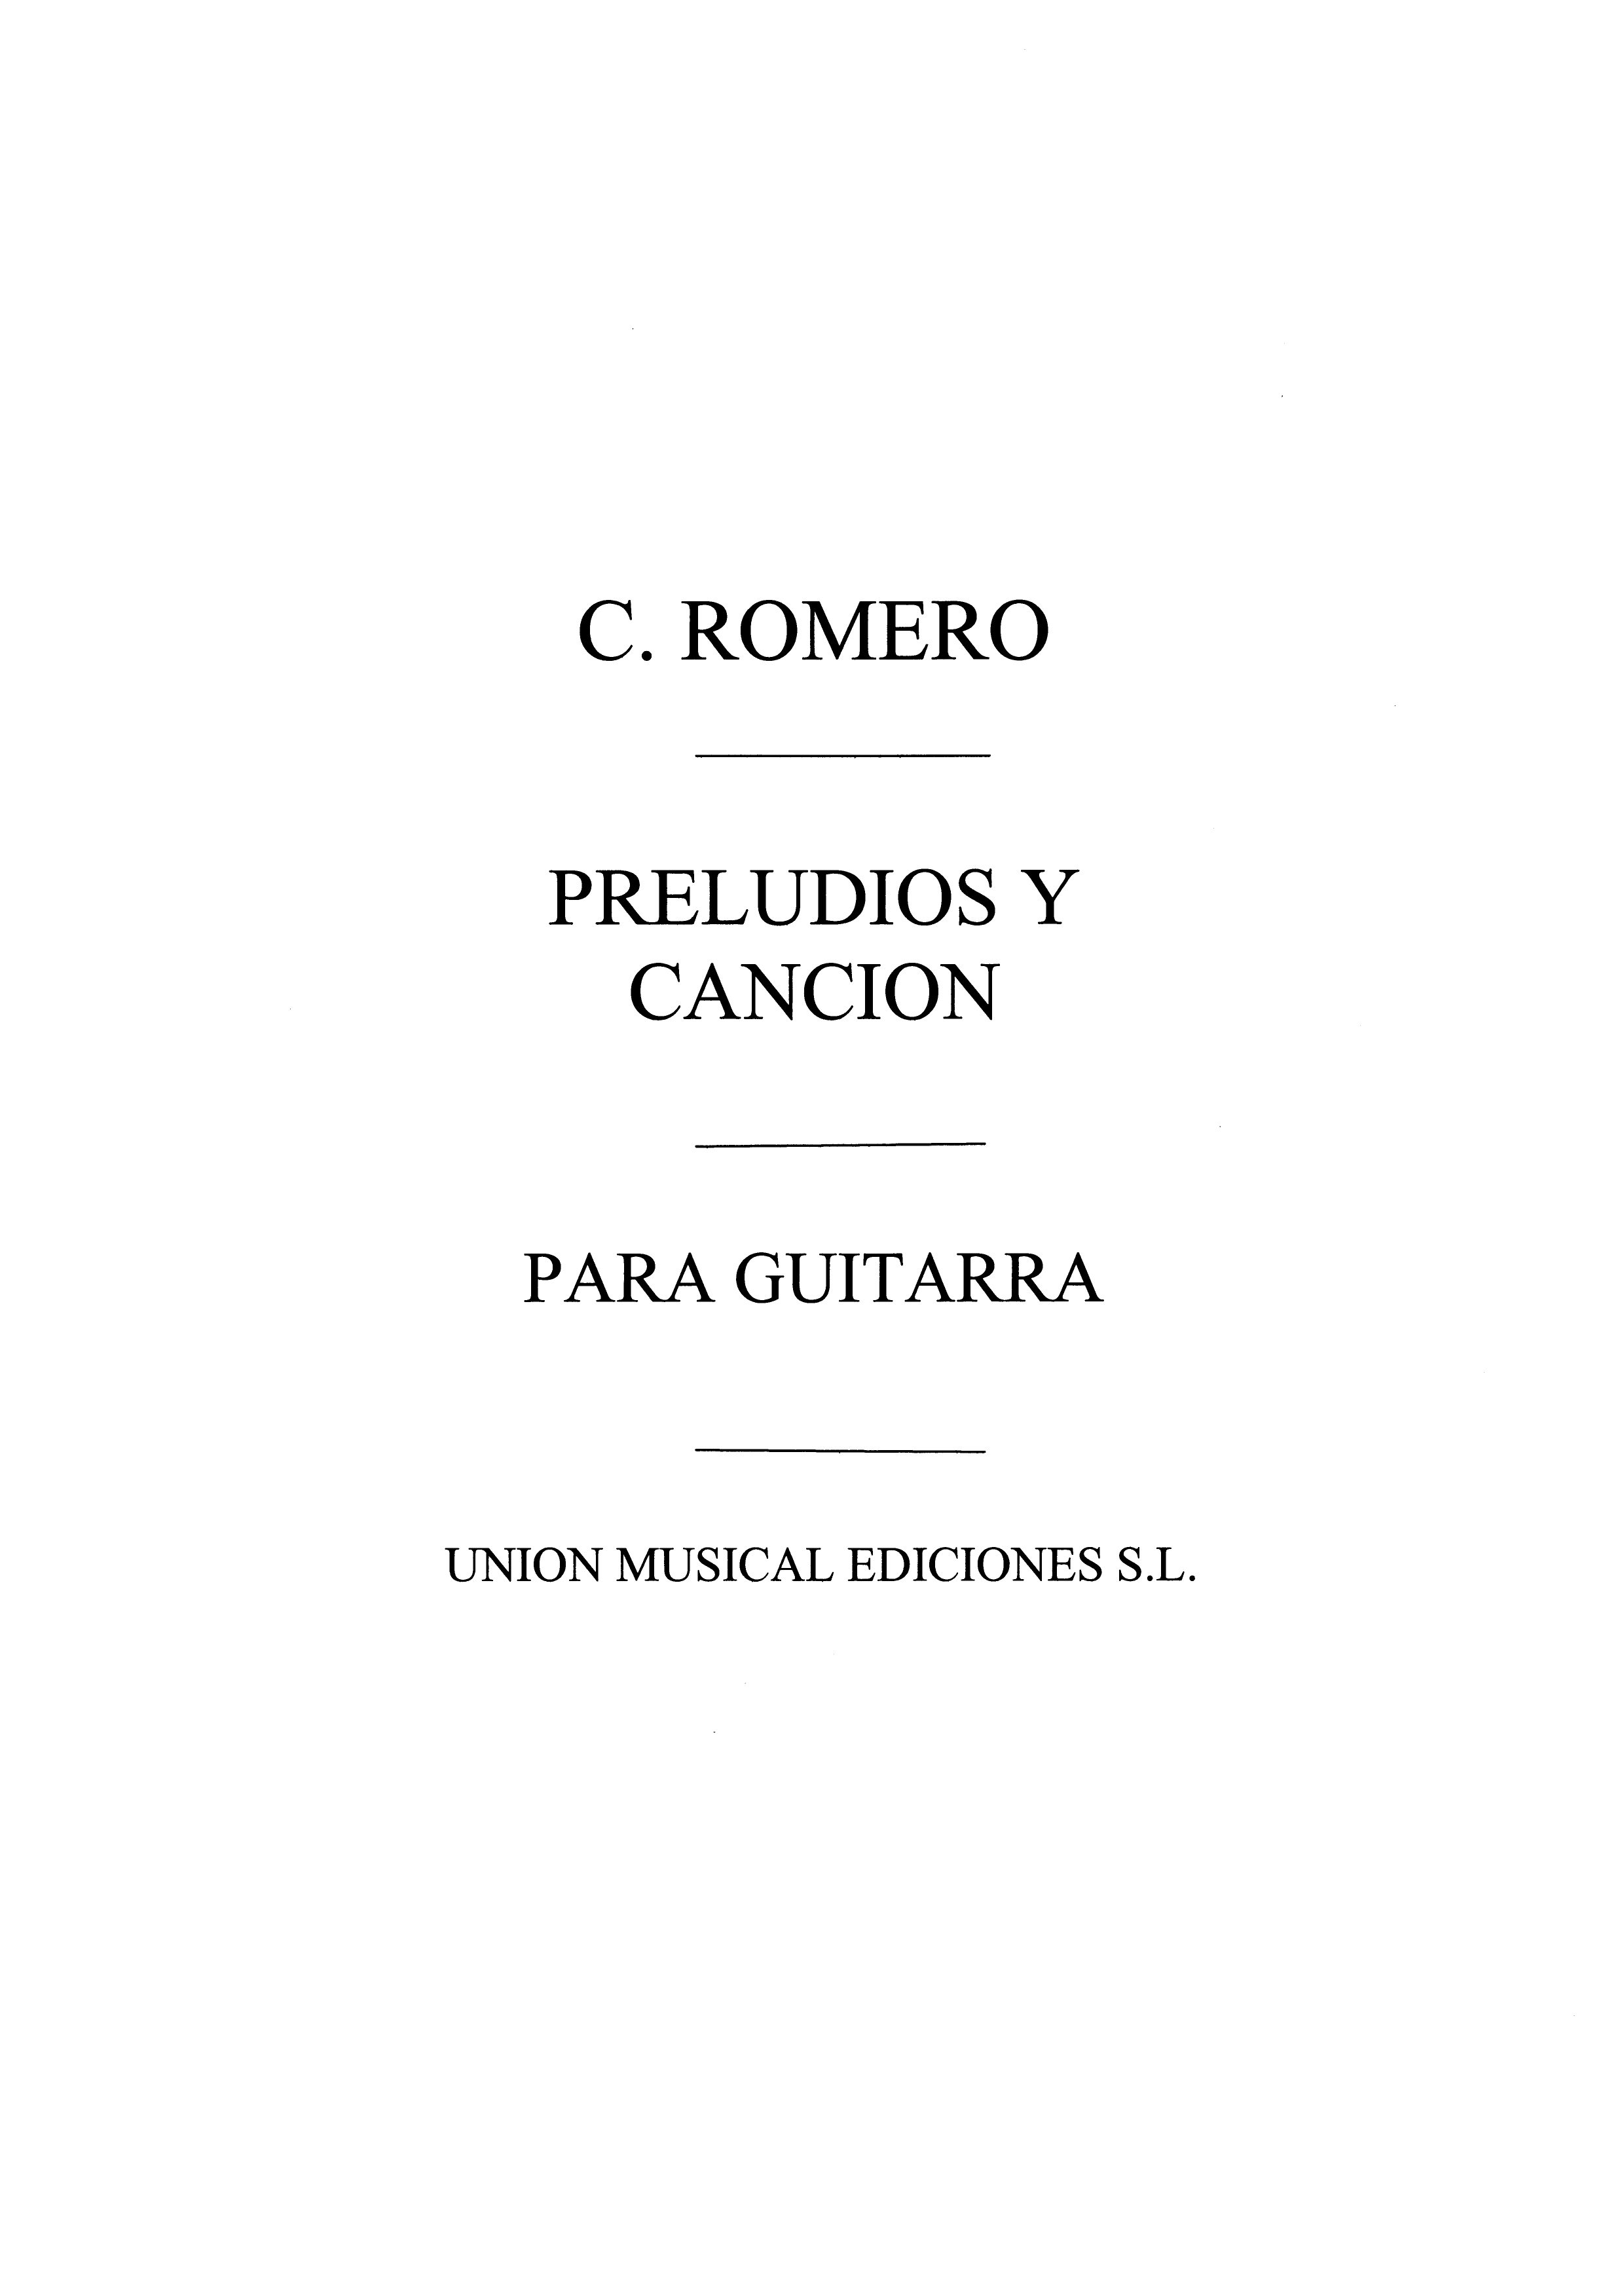 Romero: Romero (Celedonio) Preludios Y Cancion Guitar: Guitar